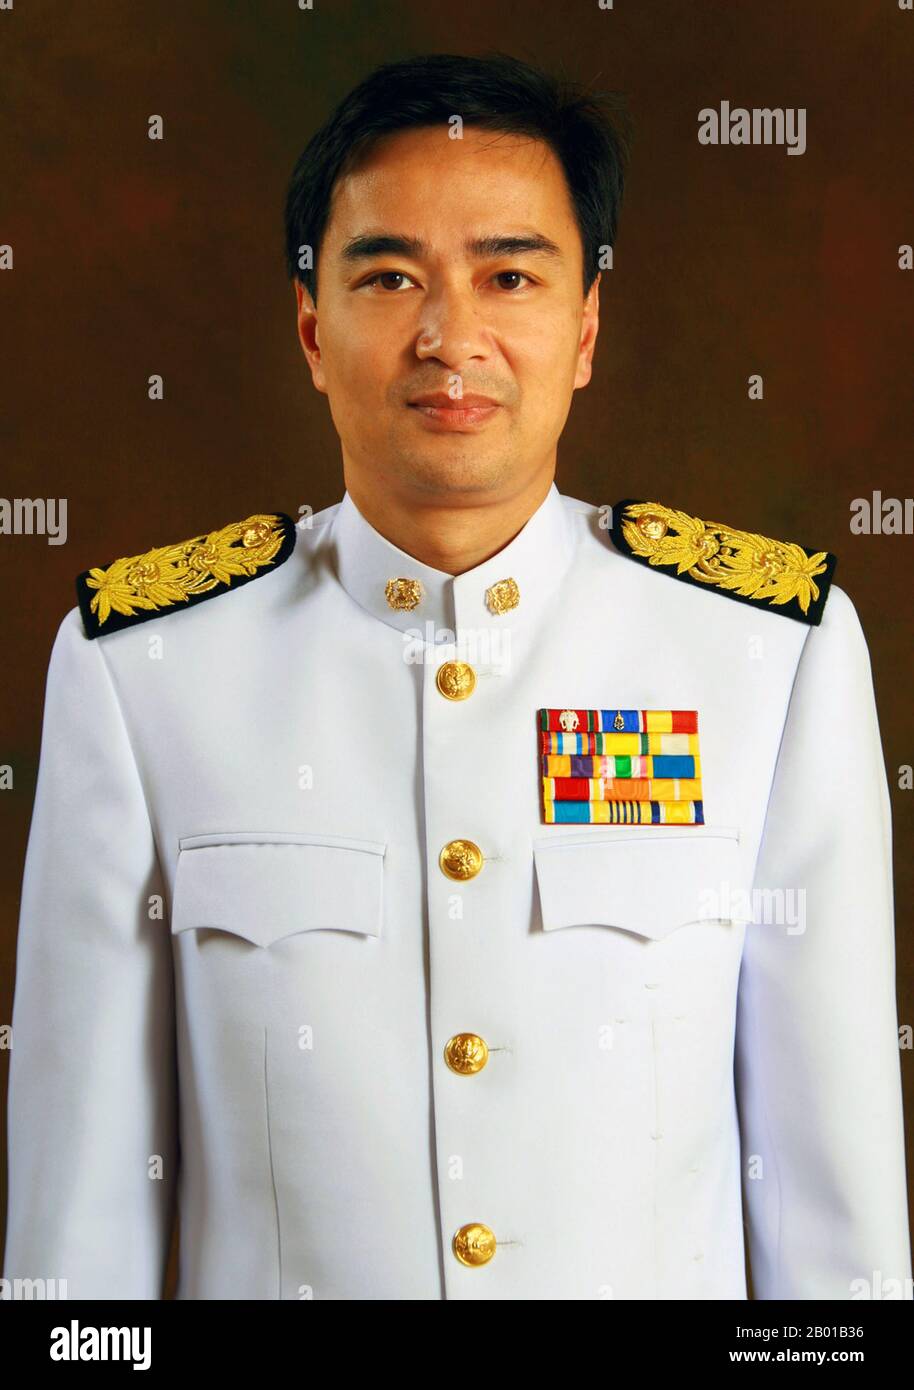 Thailandia: Abhisit Vejjajiva (3 agosto 1964 - ), primo Ministro della Thailandia (r. 2008-2011). Foto di Govt. Di Thailandia, 2009. Abhisit Vejjajiva è un politico tailandese britannico che ha servito come primo ministro della Thailandia nel 27th dal 2008 al 2011. È stato il leader del Partito democratico fino a quando non si è dimesso dopo la debole prestazione del partito nelle elezioni del 2019. Nato in Inghilterra, Abhisit ha frequentato l'Eton College e ha conseguito diplomi e master presso l'Università di Oxford. È stato eletto al Parlamento della Thailandia all'età di 27 anni e promosso a leader del Partito democratico nel 2005. Foto Stock